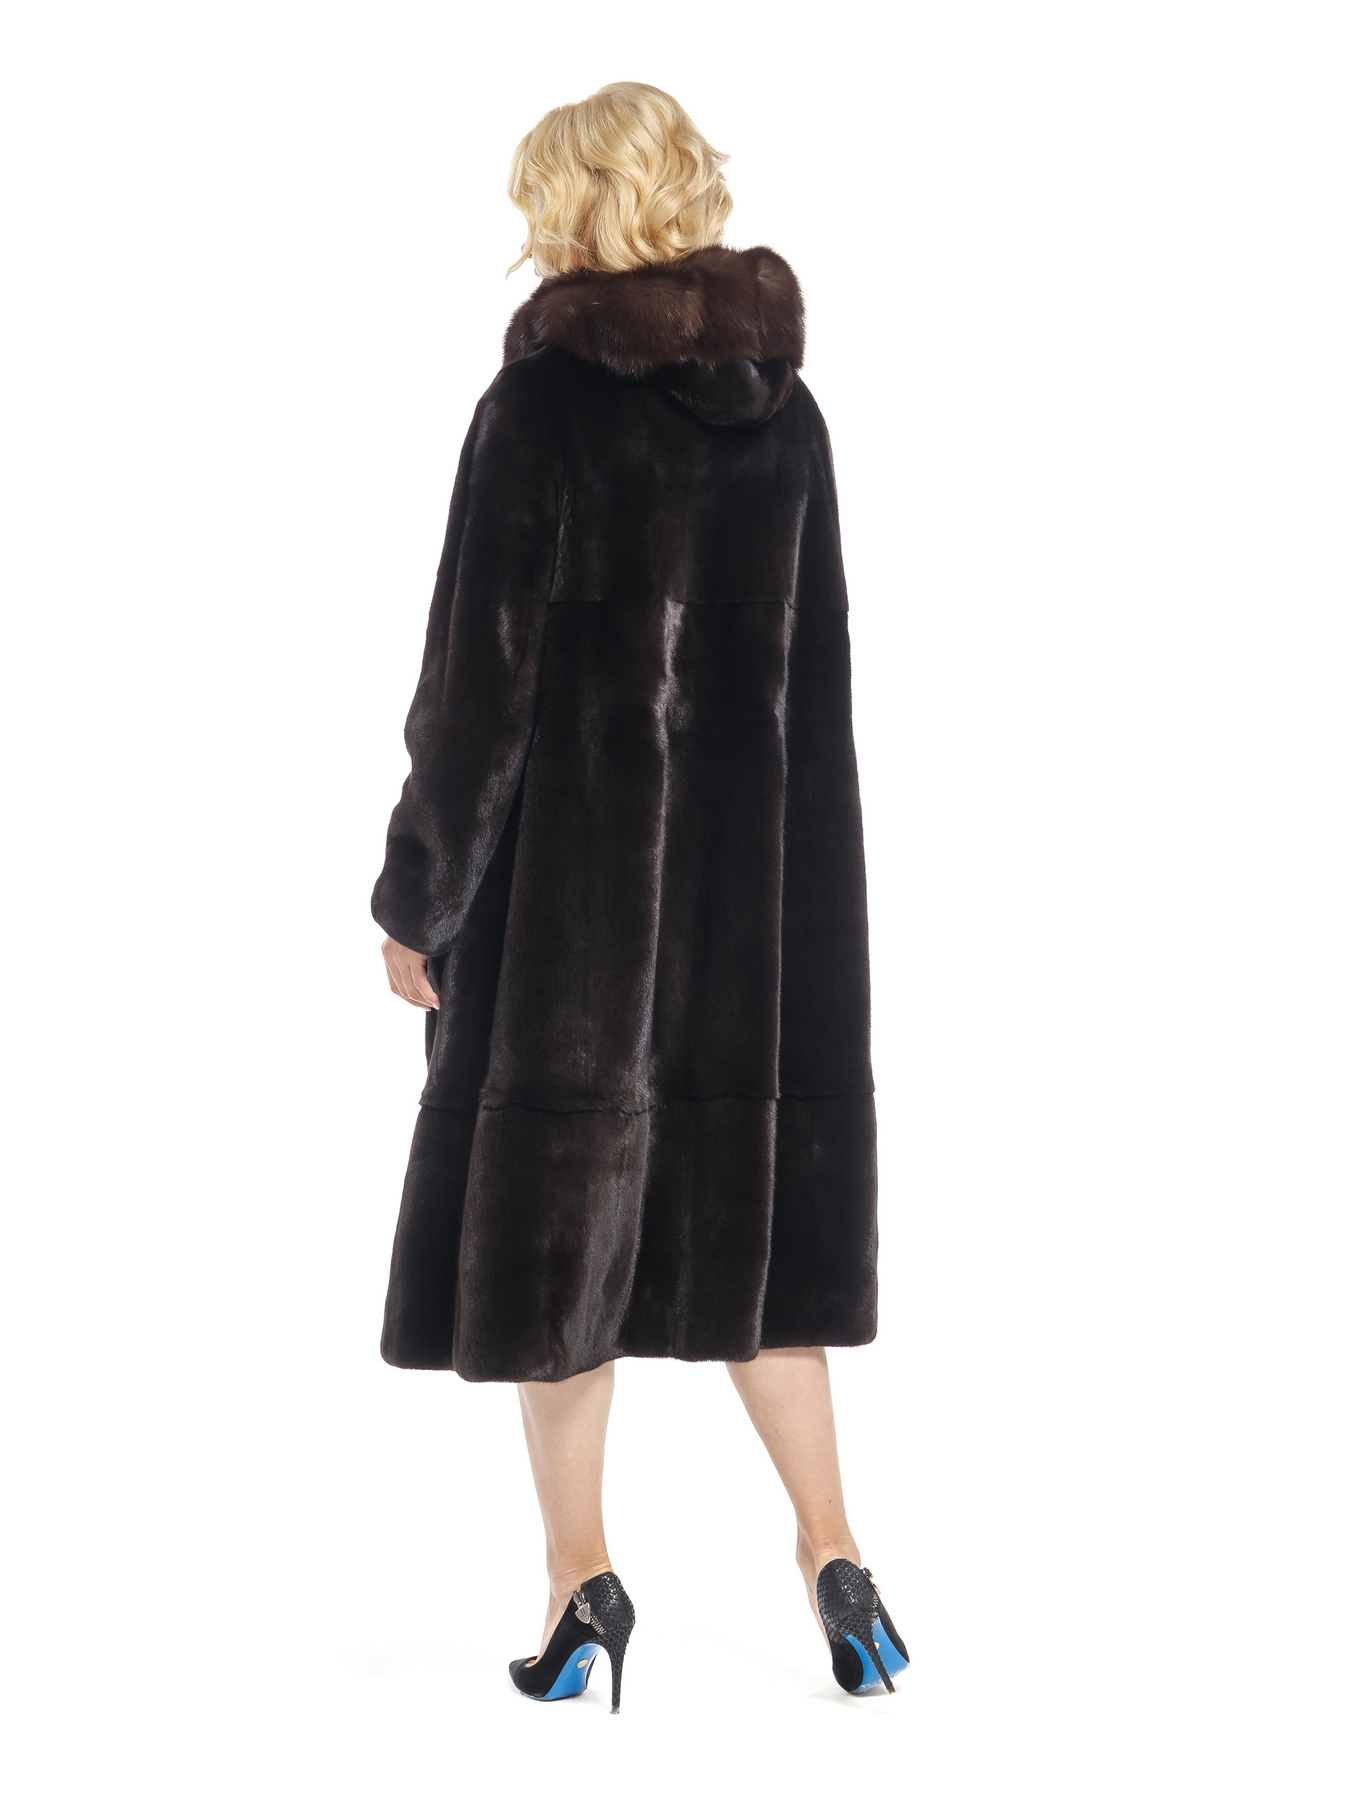 Женскиое пальто из меха норки с капюшоном, отделка из меха соболя